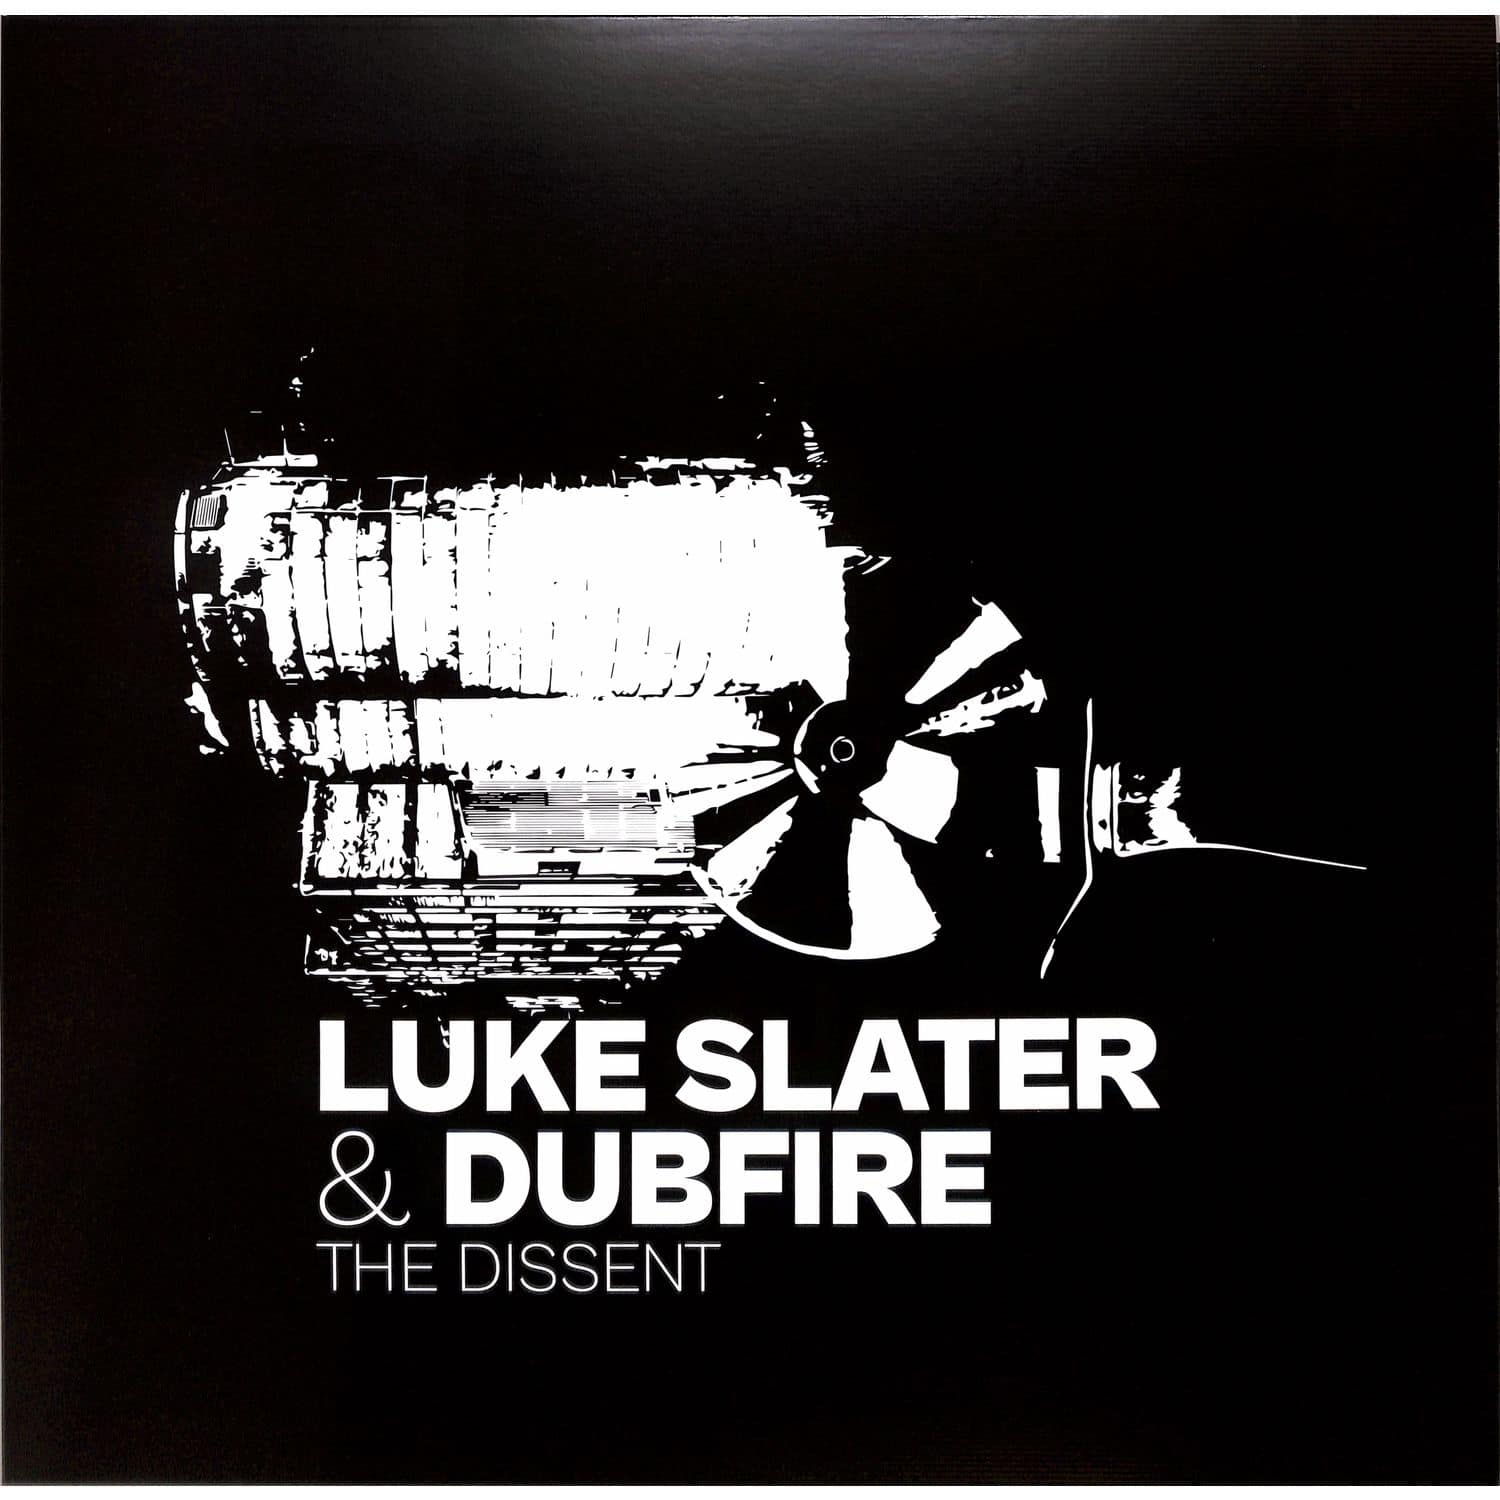 Luke Slater & Dubfire - THE DISSENT EP